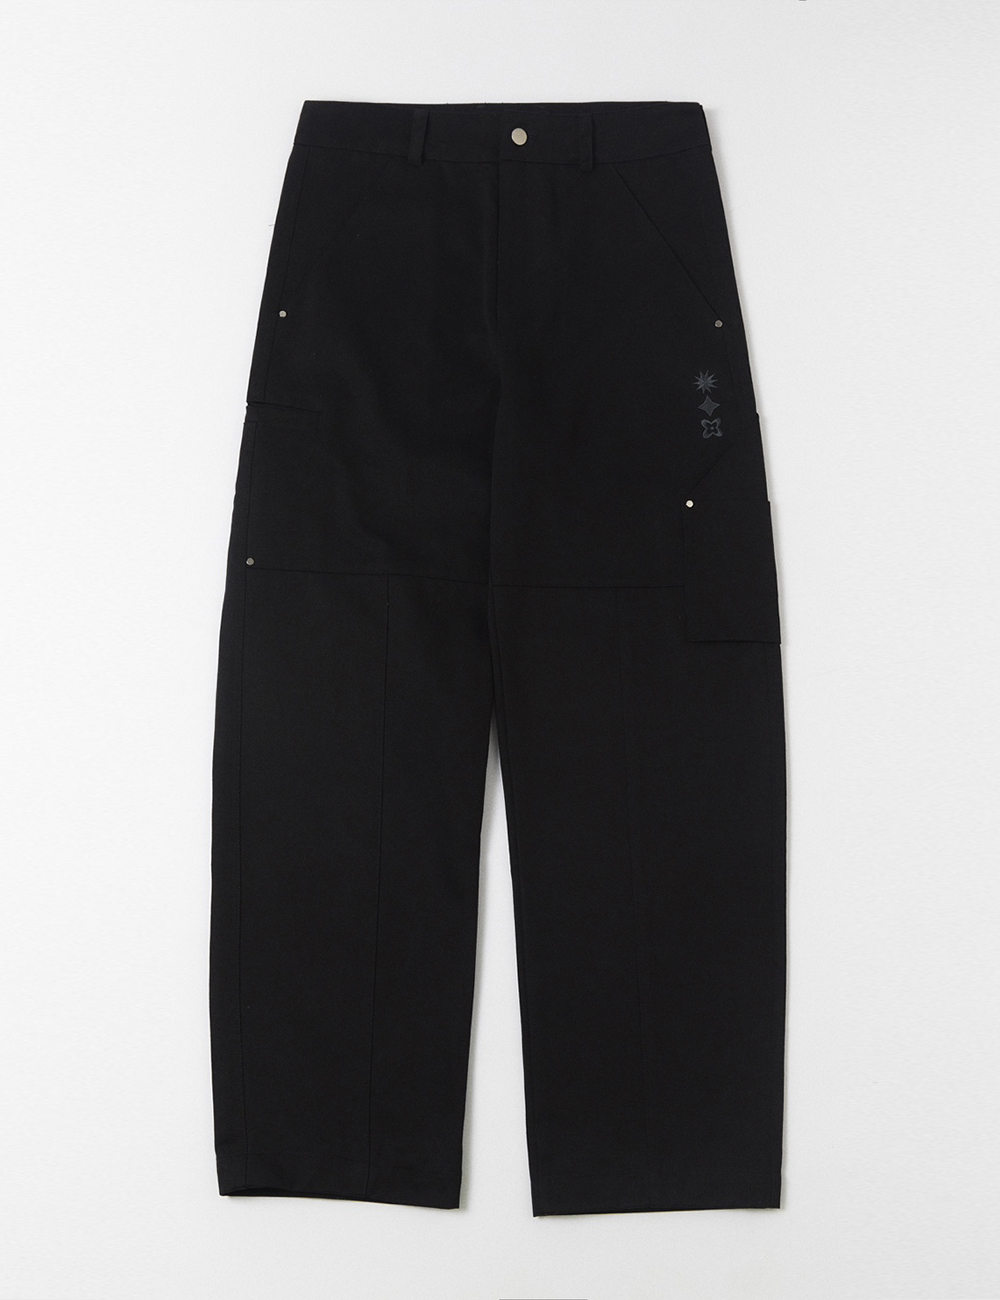 amareis assemble rivet pants (black)